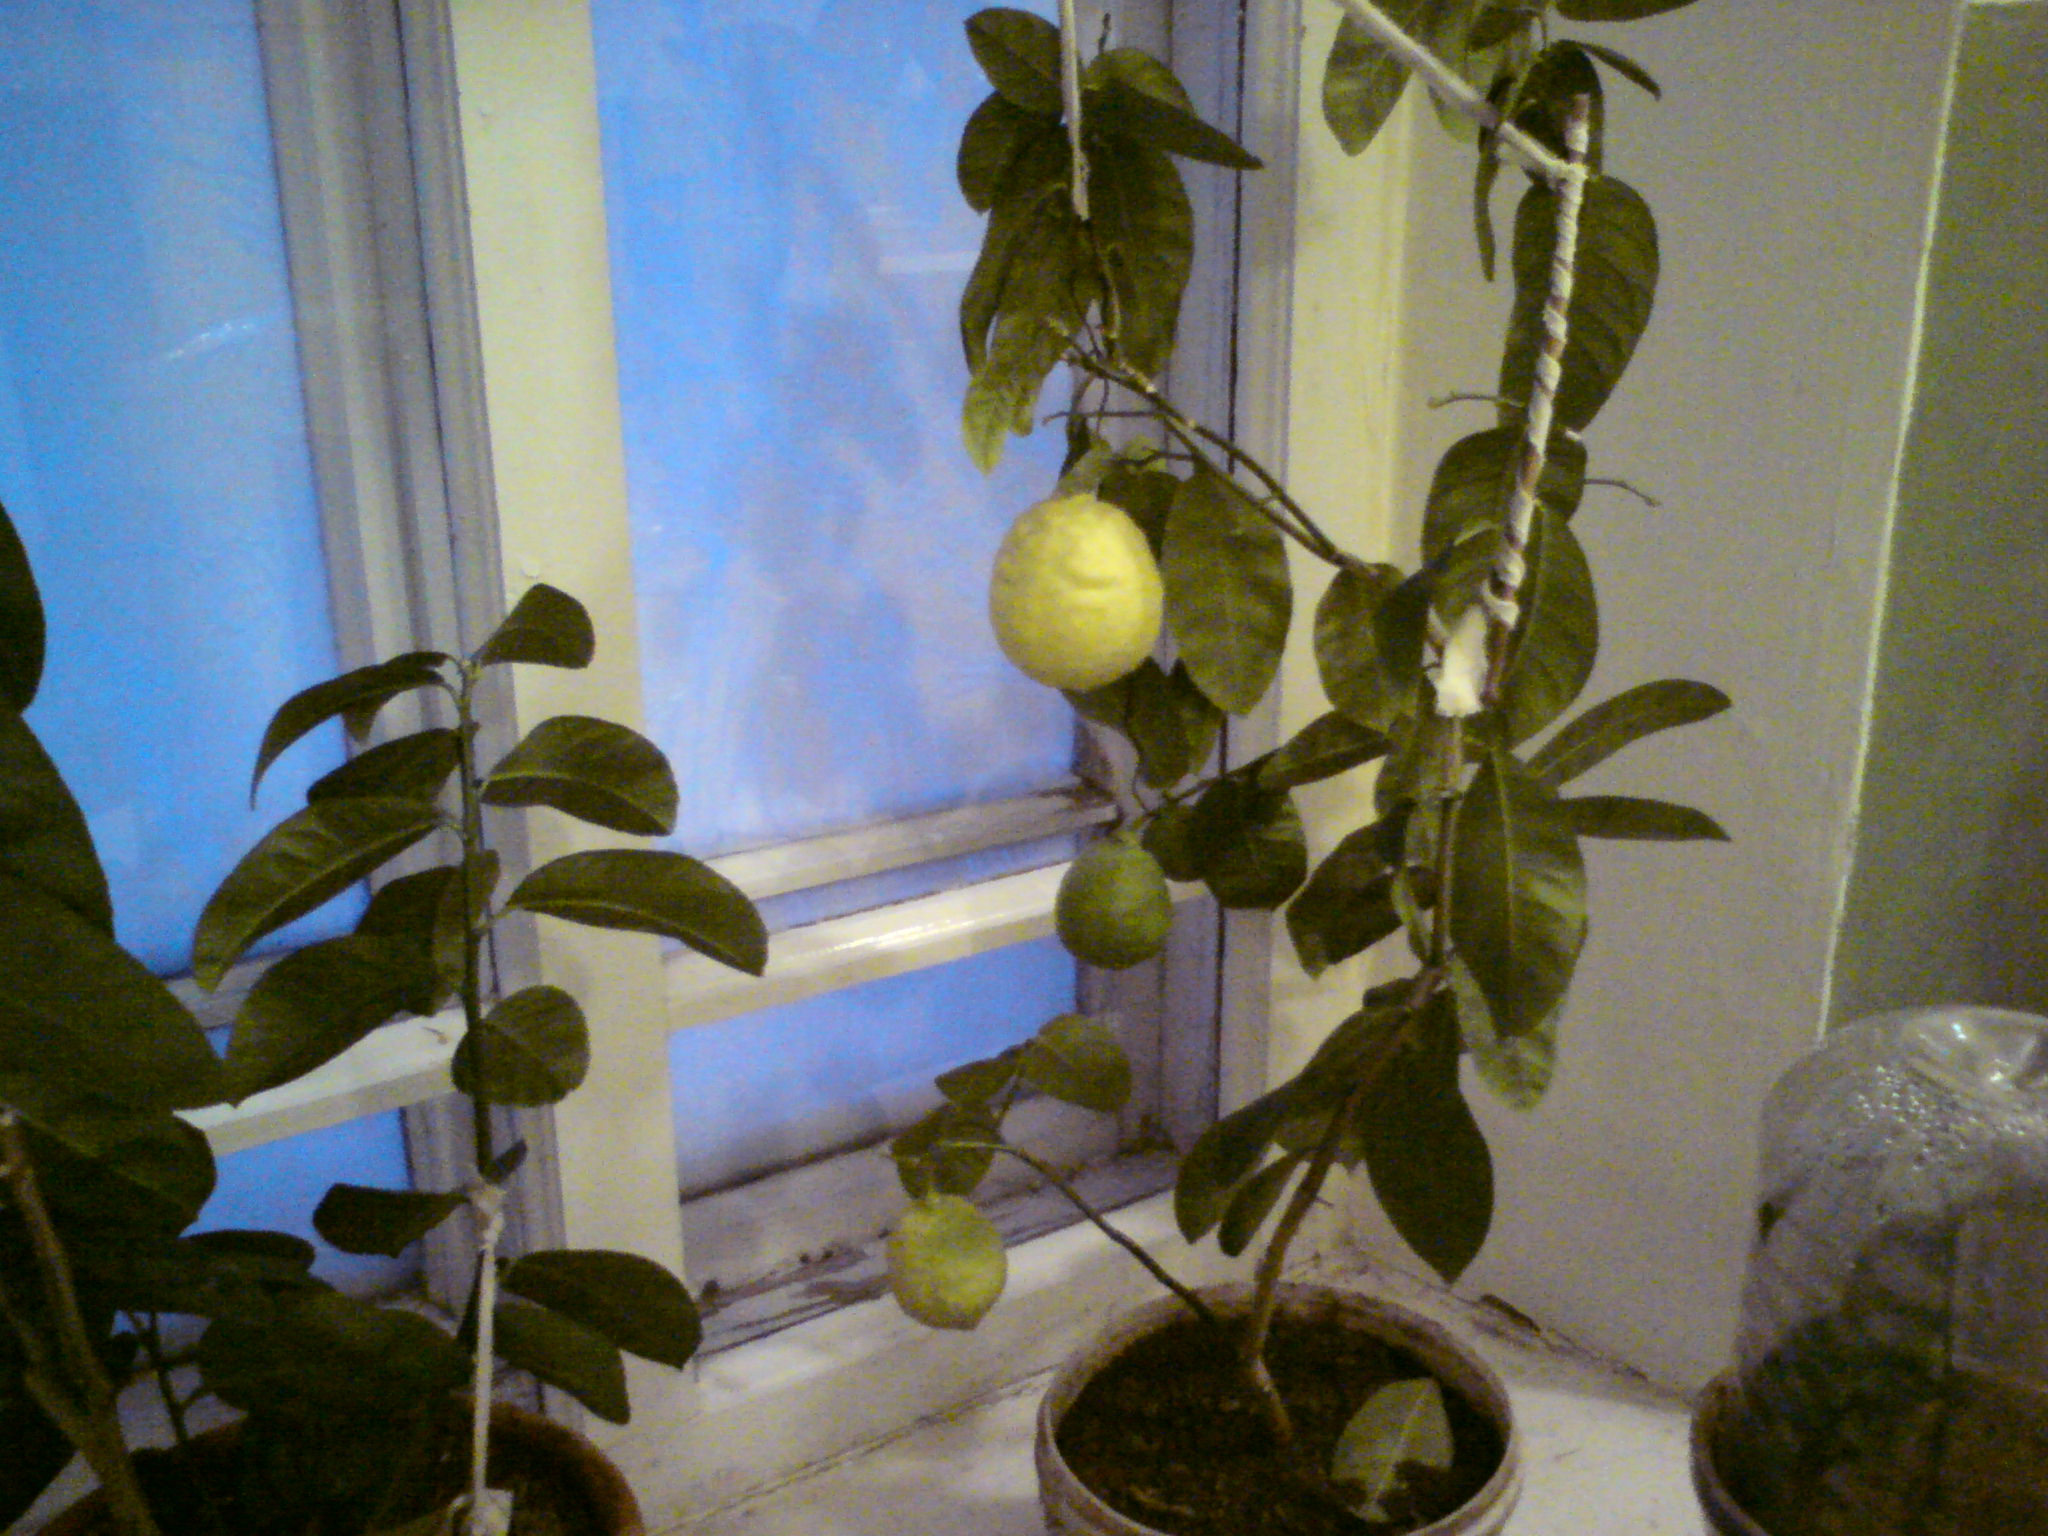 Как вырастить лимон в домашних условиях?